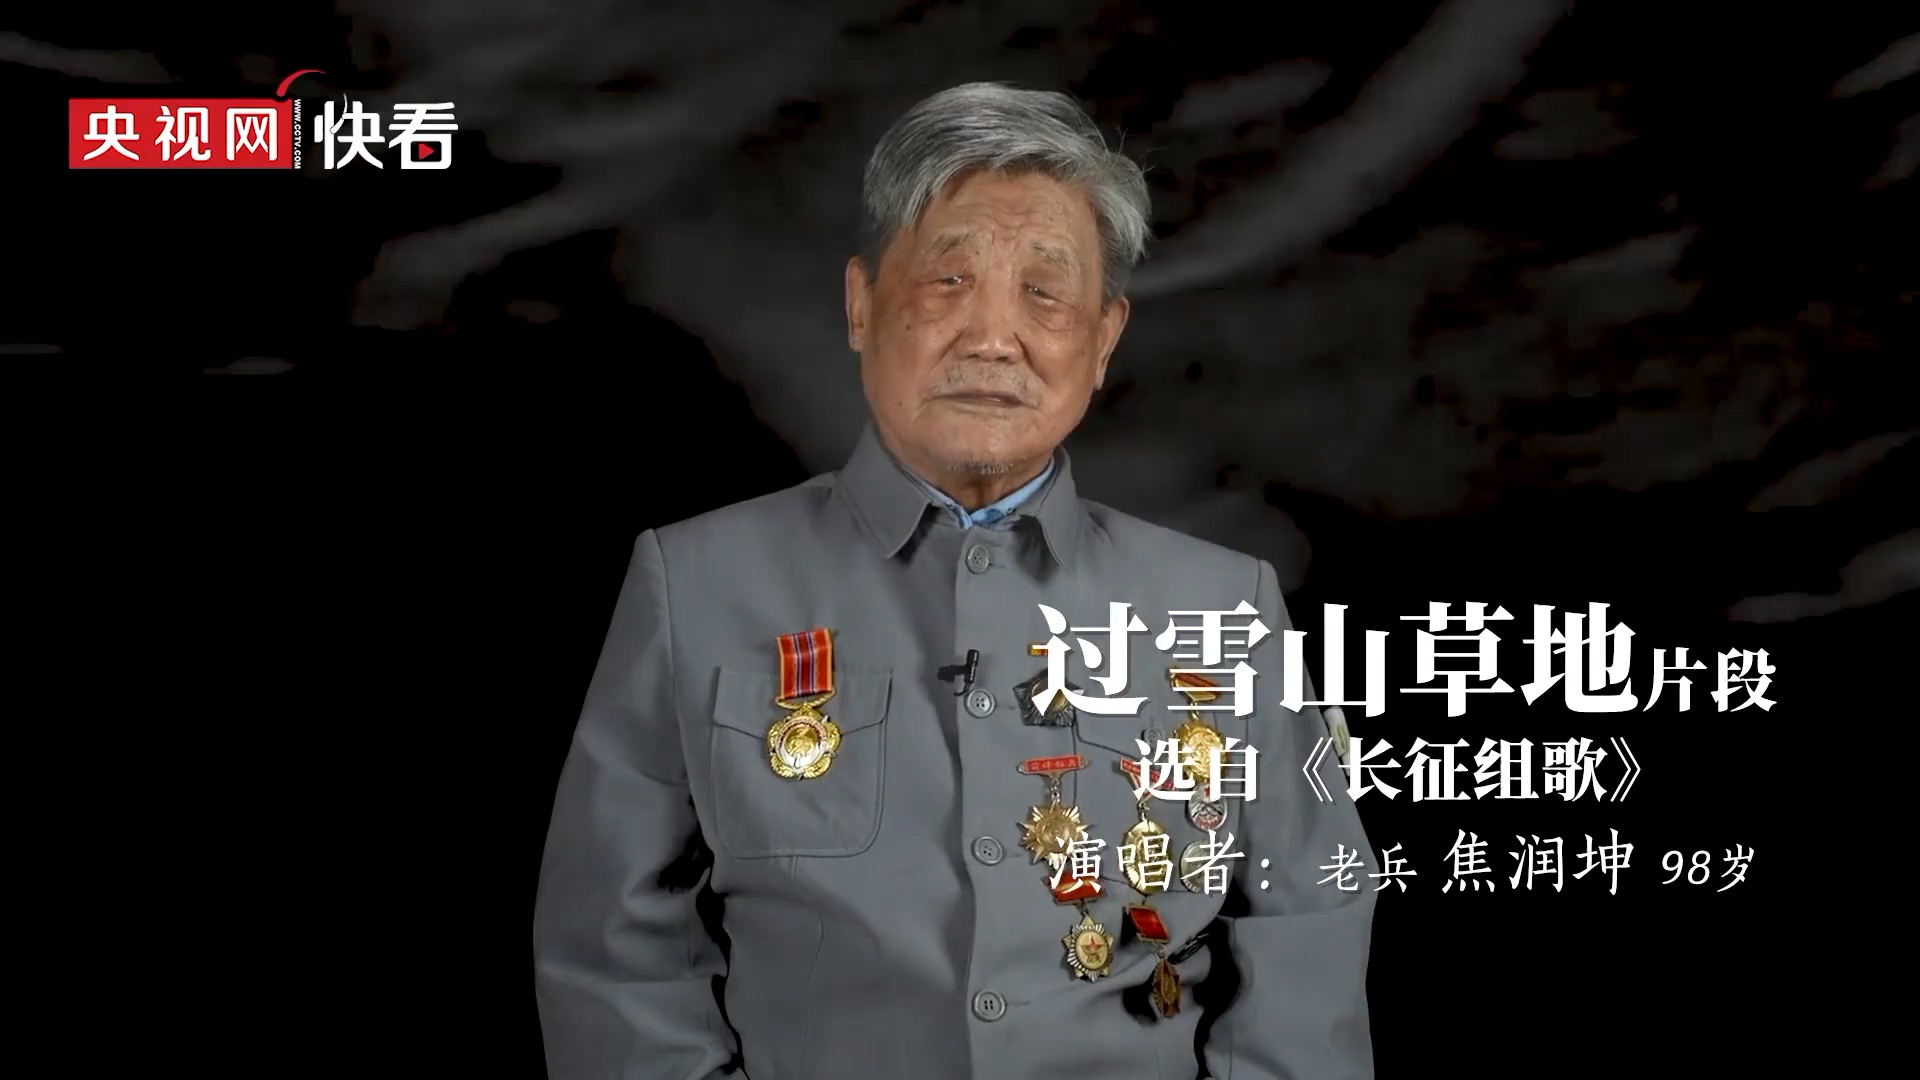 视频致敬98岁老兵清唱红军长征歌曲